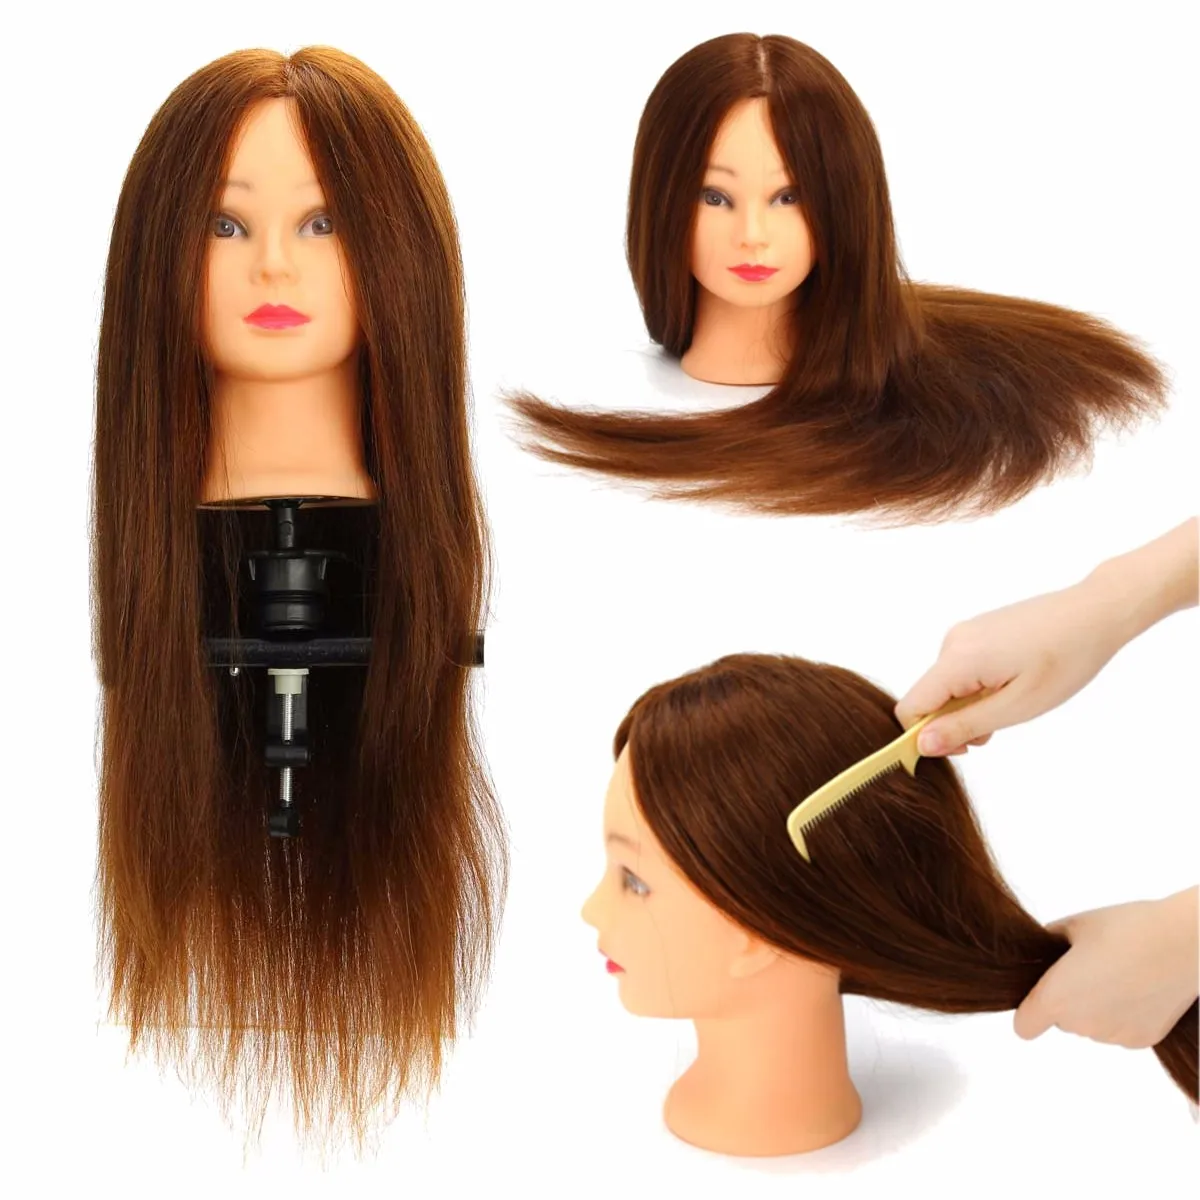 24 дюйма настоящие человеческие волосы каштановые прямые волосы тренировочная головка для обучения парикмахеров Манекен Модель волос кукла голова